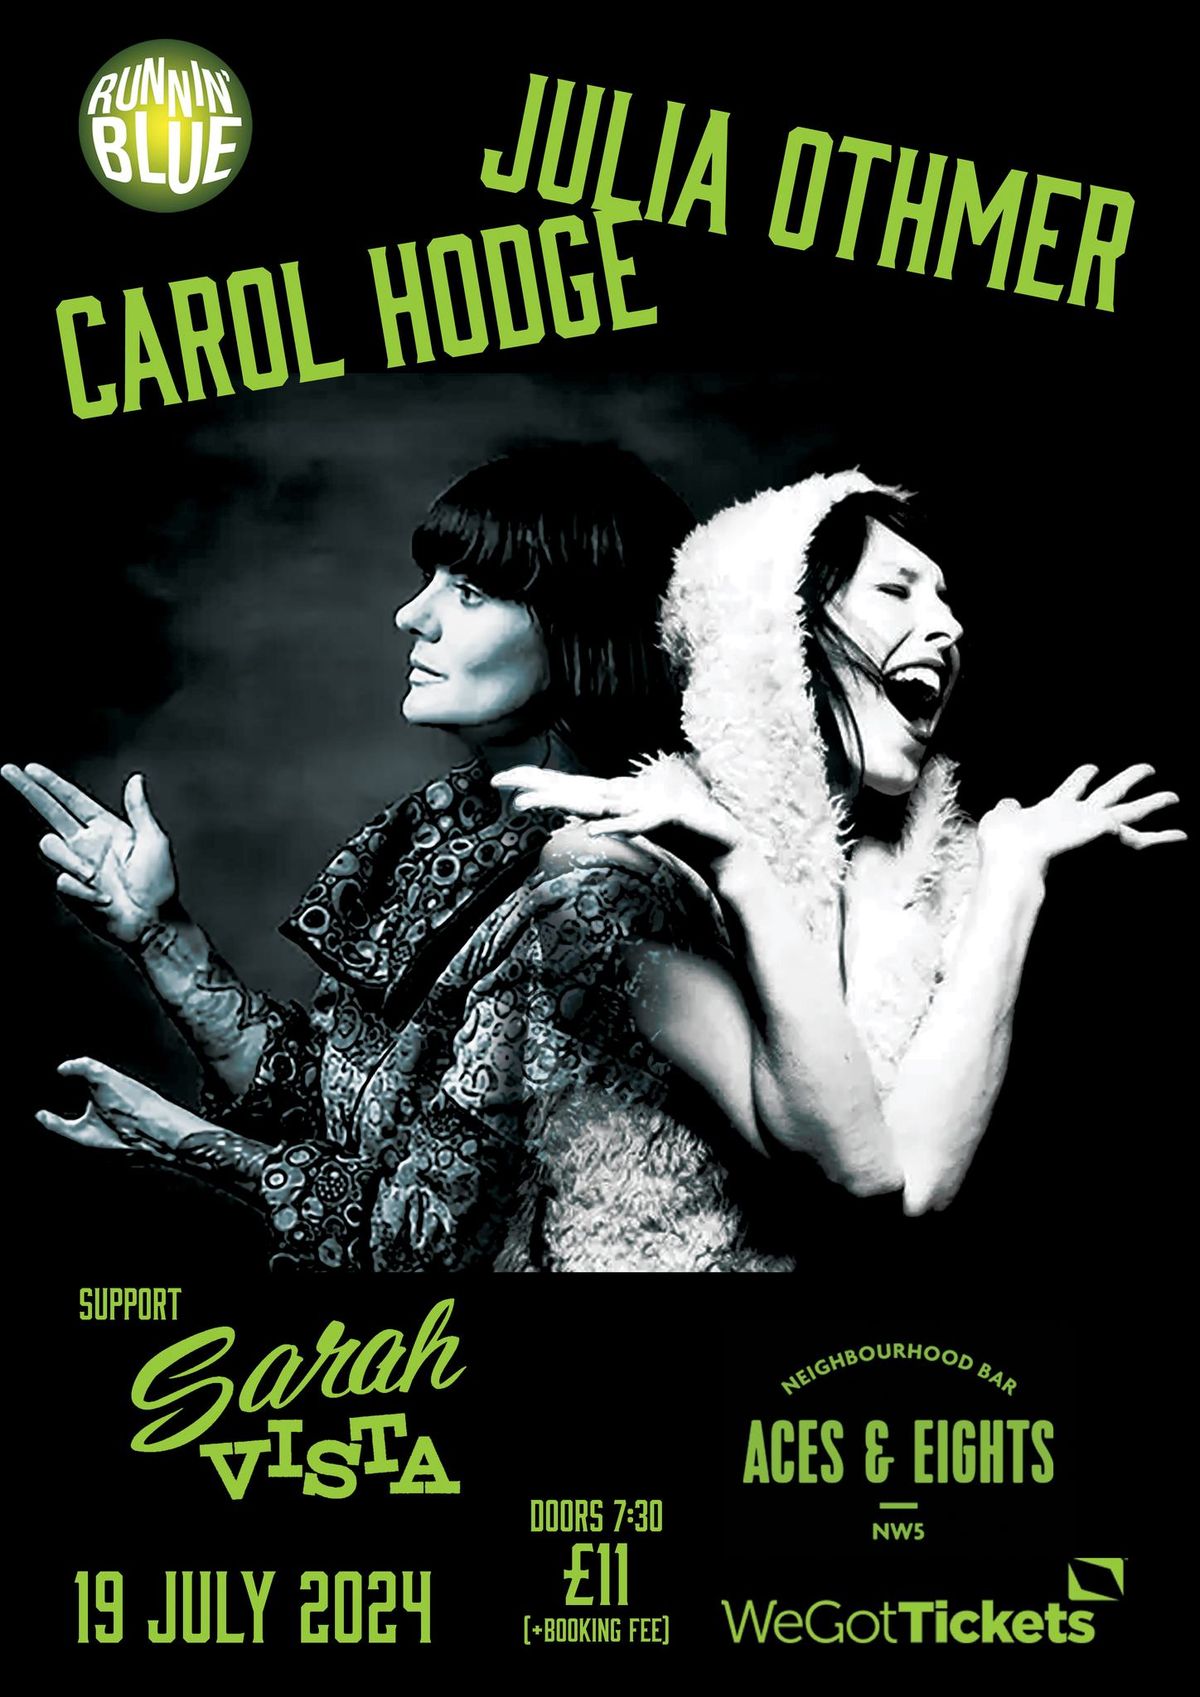 Carol Hodge & Julia Othmer with Sarah Vista